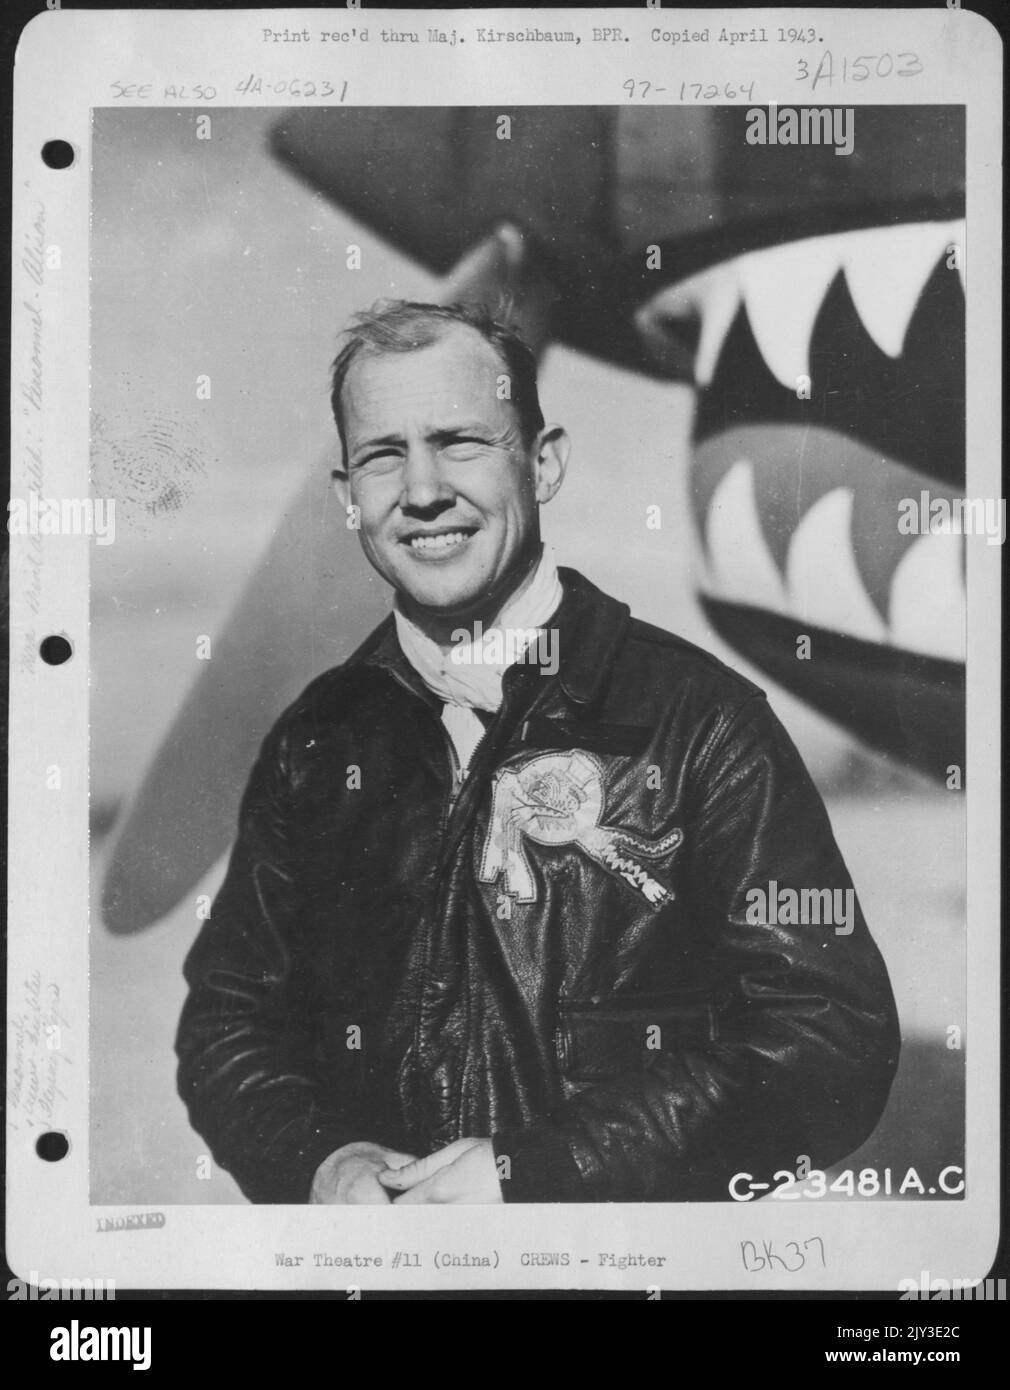 Maj. John R. Alison, Gainesville, Florida, ein American Volunteer Group Ace (Flying Tigers) posiert vor einem Curtiss P-40 auf einem Luftstützpunkt irgendwo in China. Stockfoto